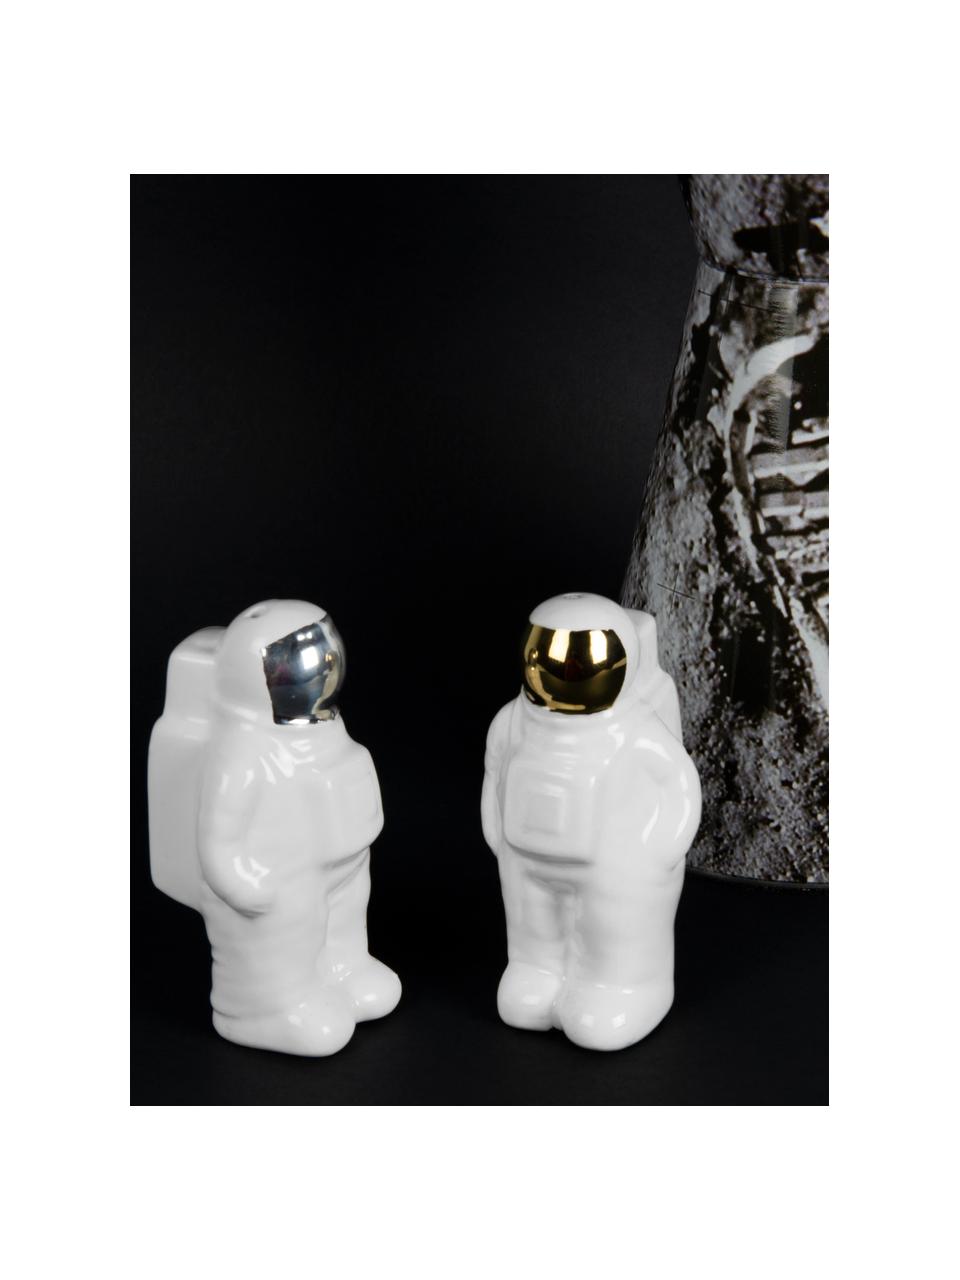 Salz- und Pfefferstreuer Astronaut aus Porzellan in Gold/Silber, 2er-Set, Porzellan, Weiss, Silberfarben, Goldfarben, 6 x 9 cm